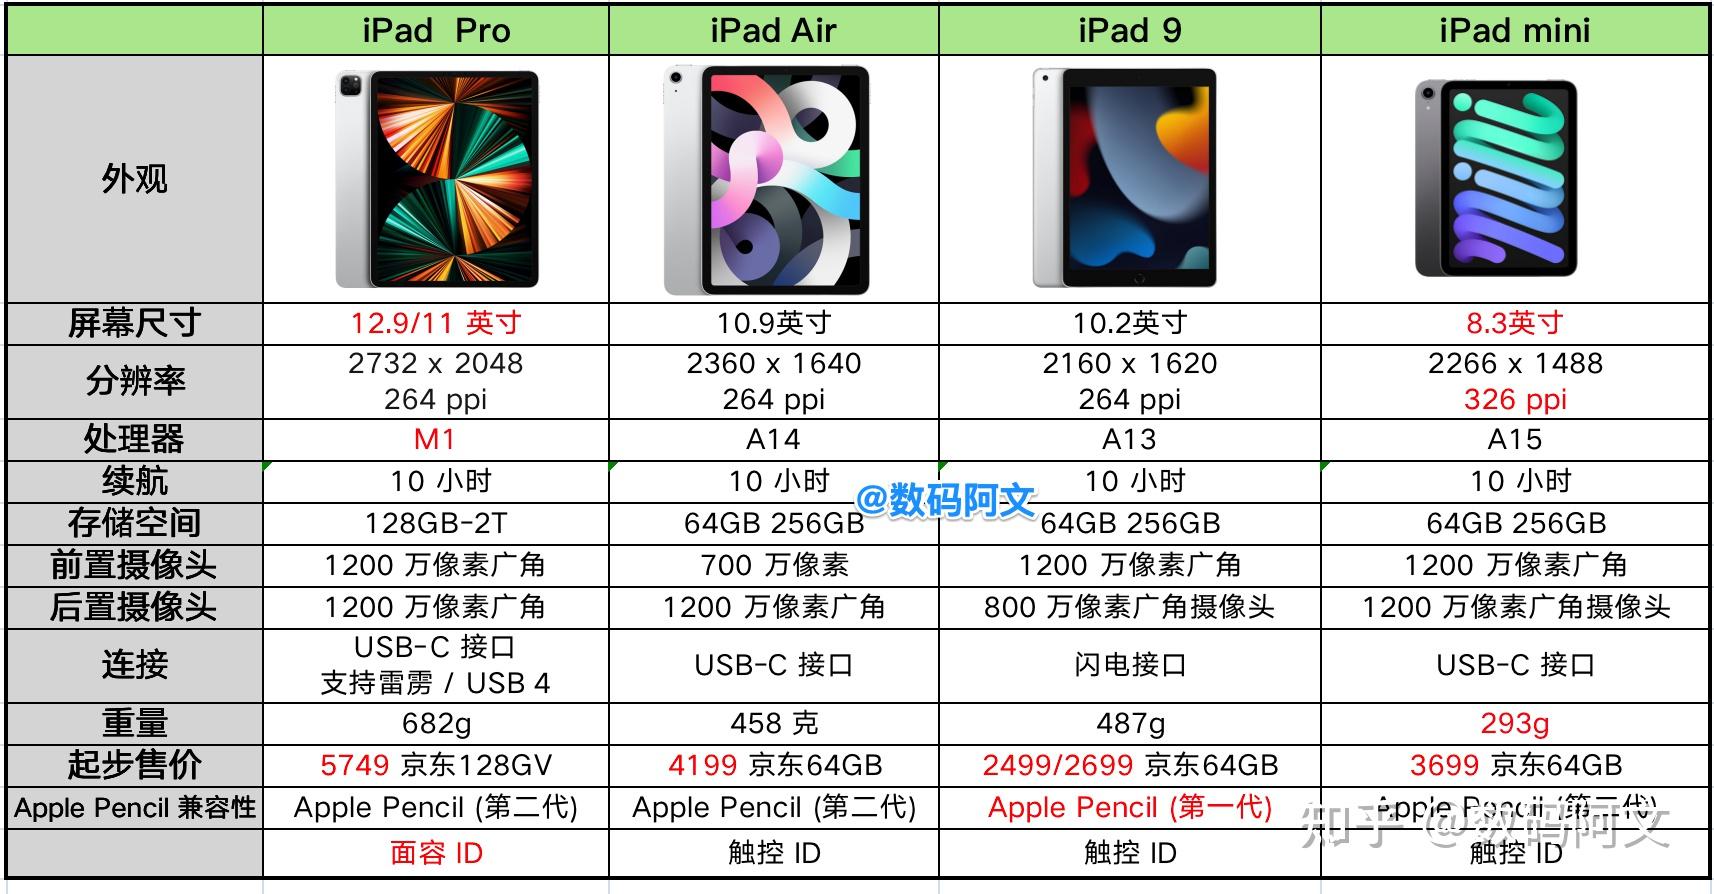 首先,看下ipad整体对比:目前在售的新款的ipad的有如下4大类,ipad pro